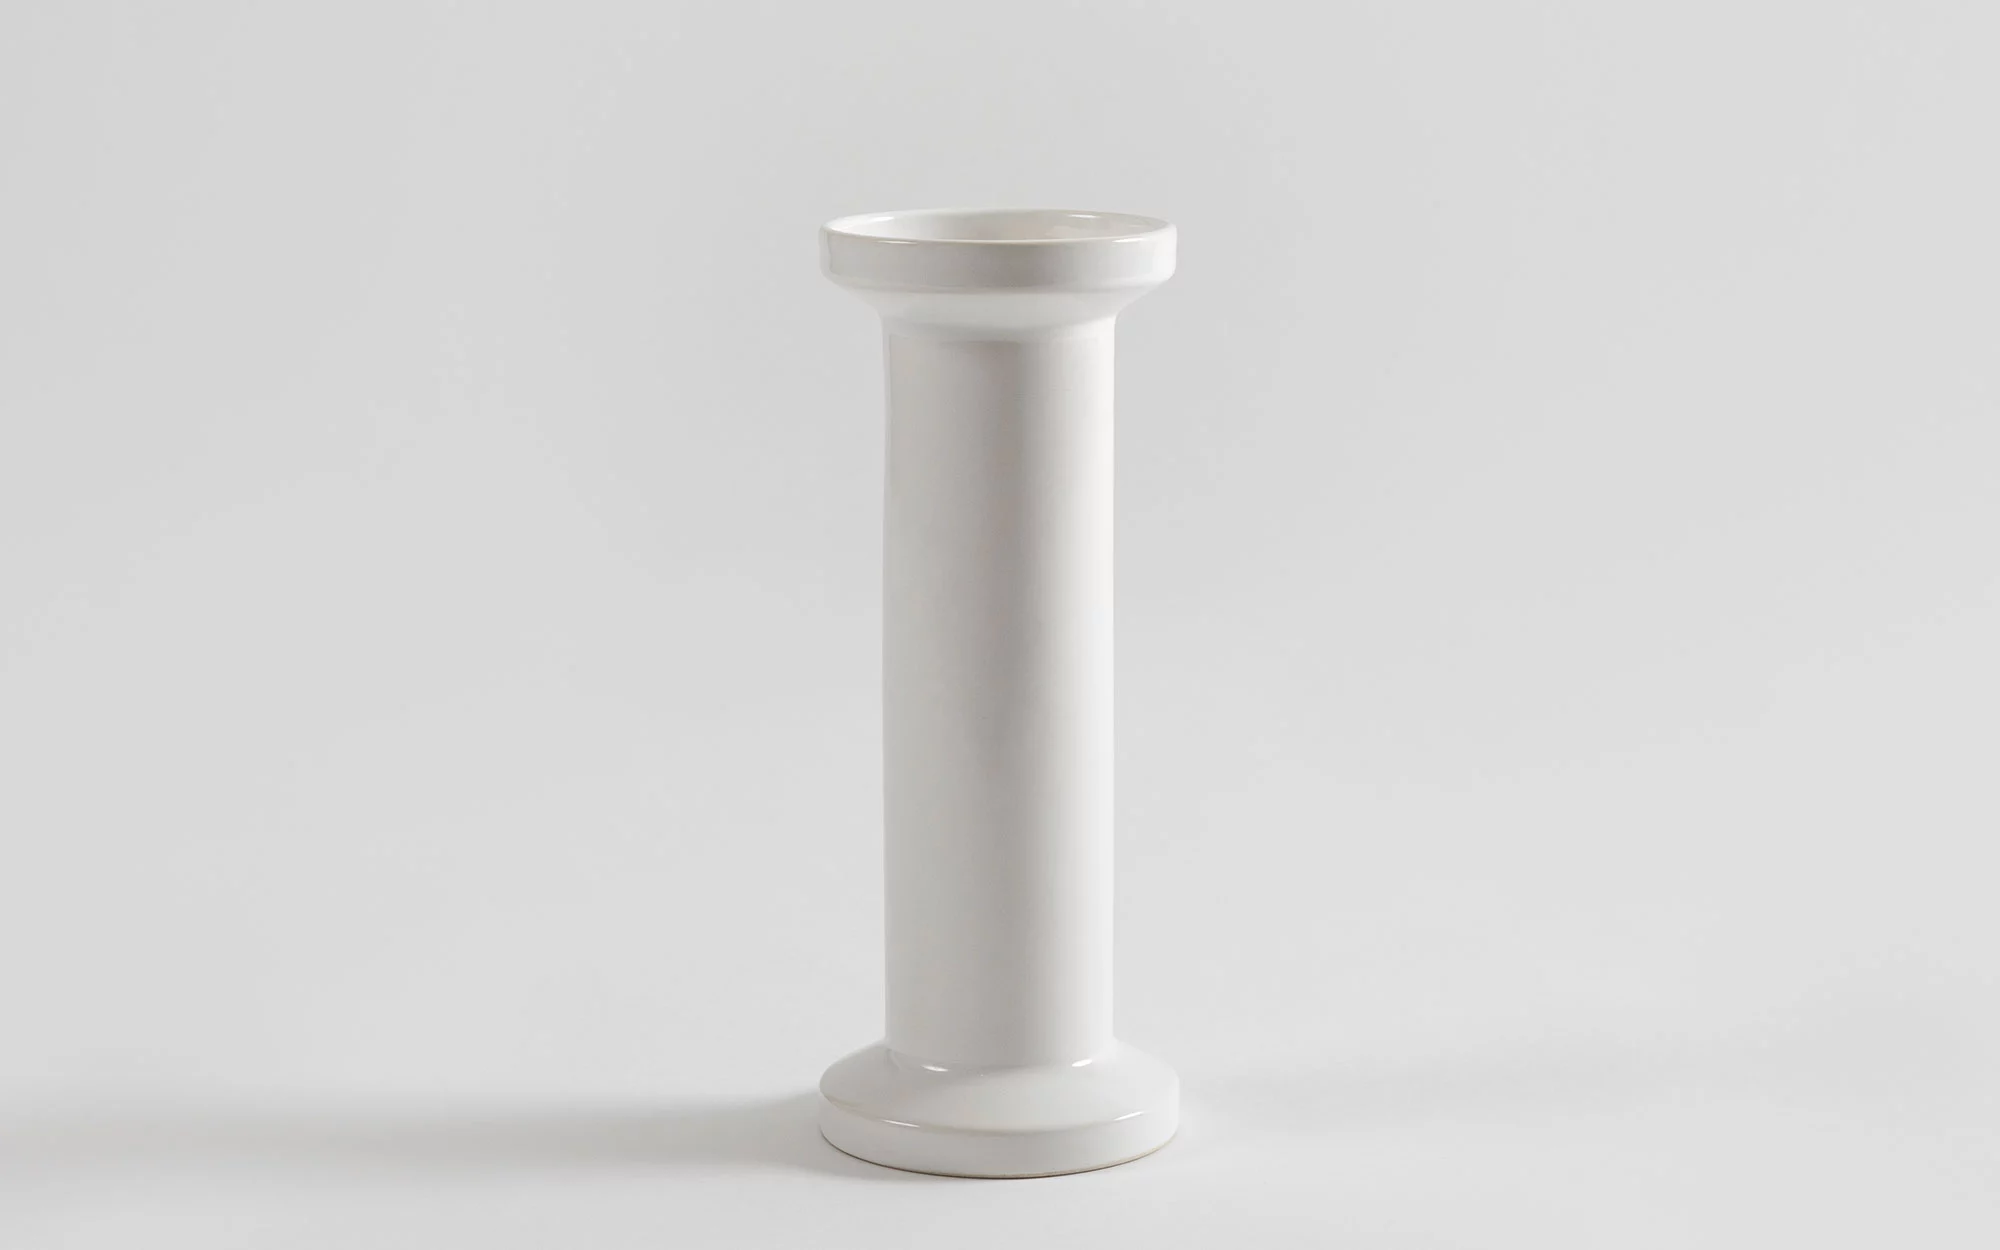 Vase - Jasper Morrison - Desk - Galerie kreo